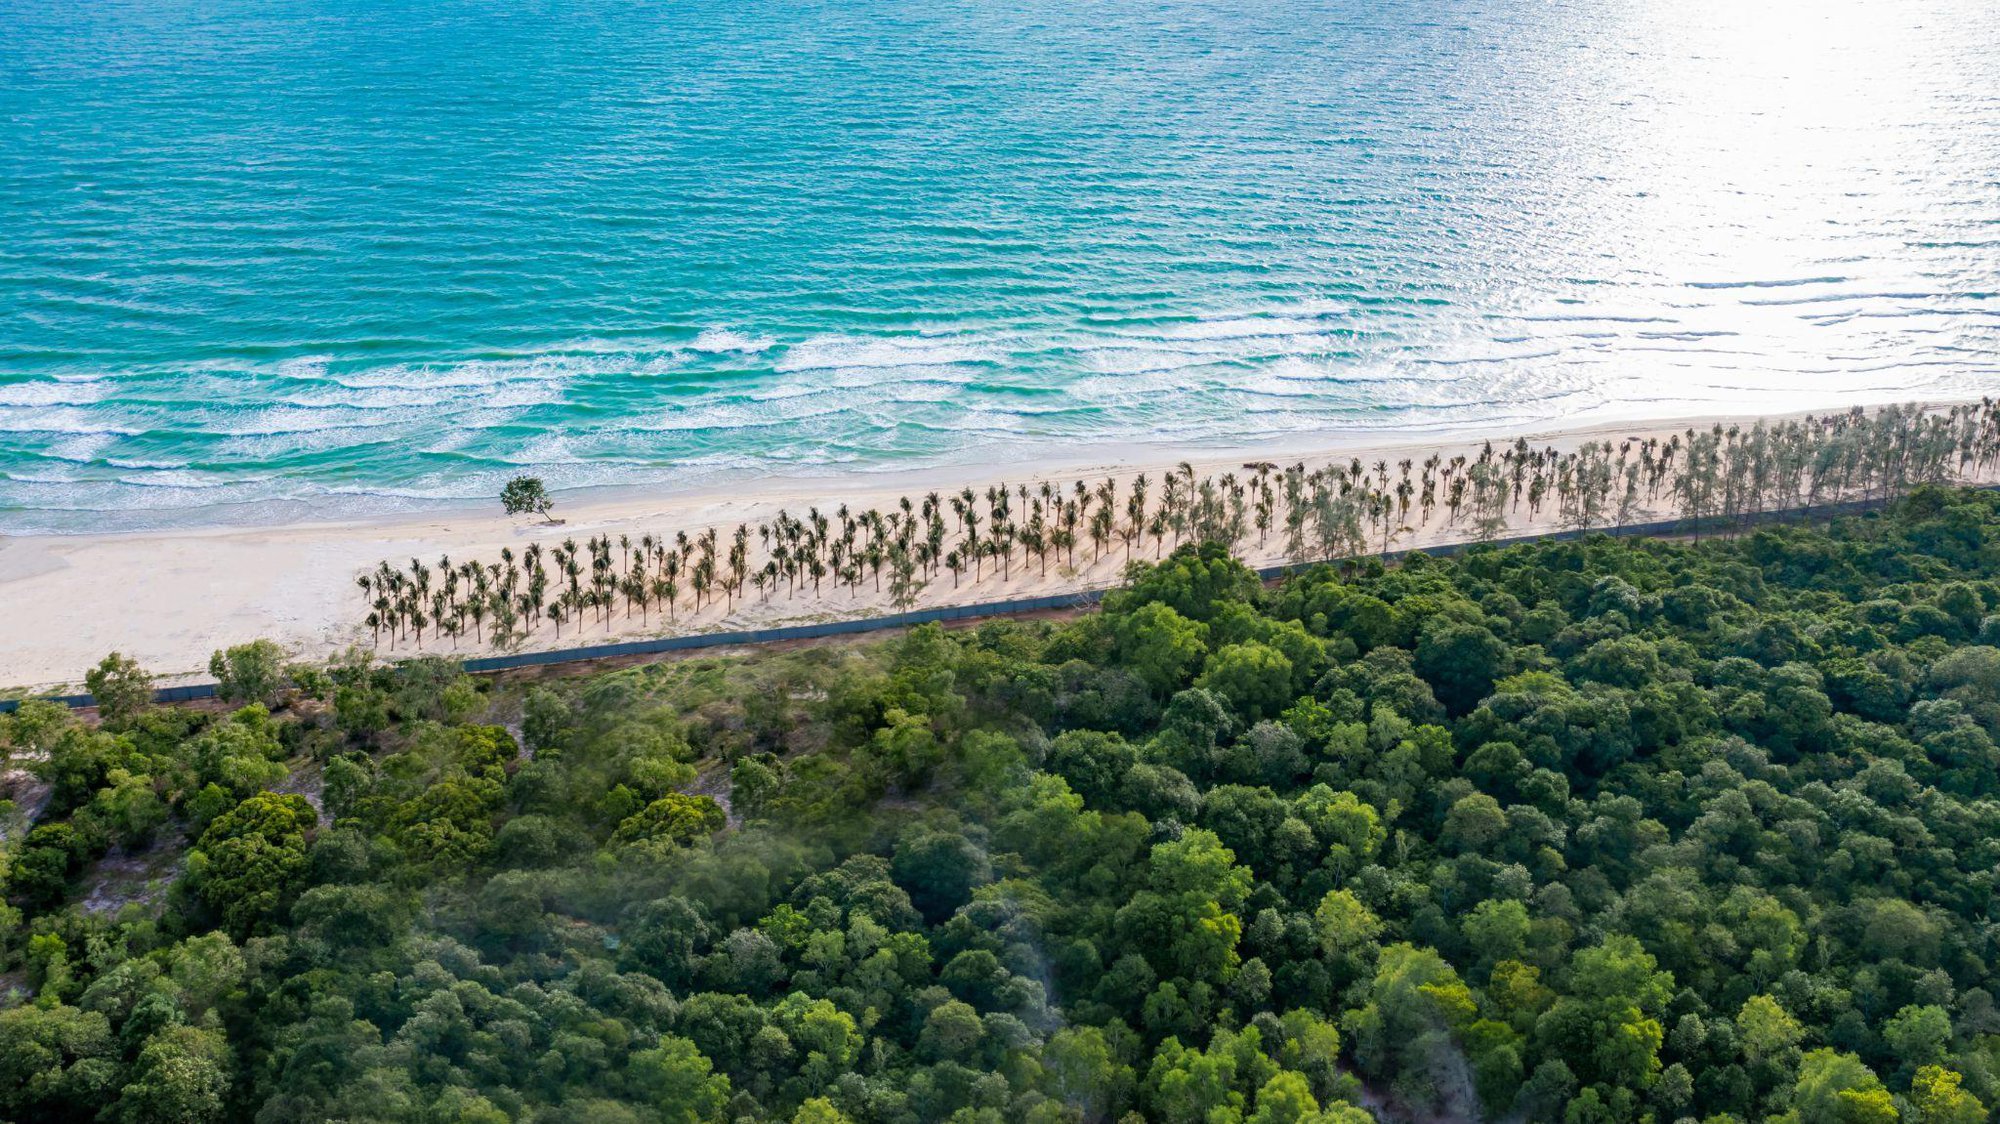 Mục sở thị 3 bãi biển đẹp bậc nhất hành tinh tại Phú Quốc - ảnh 6